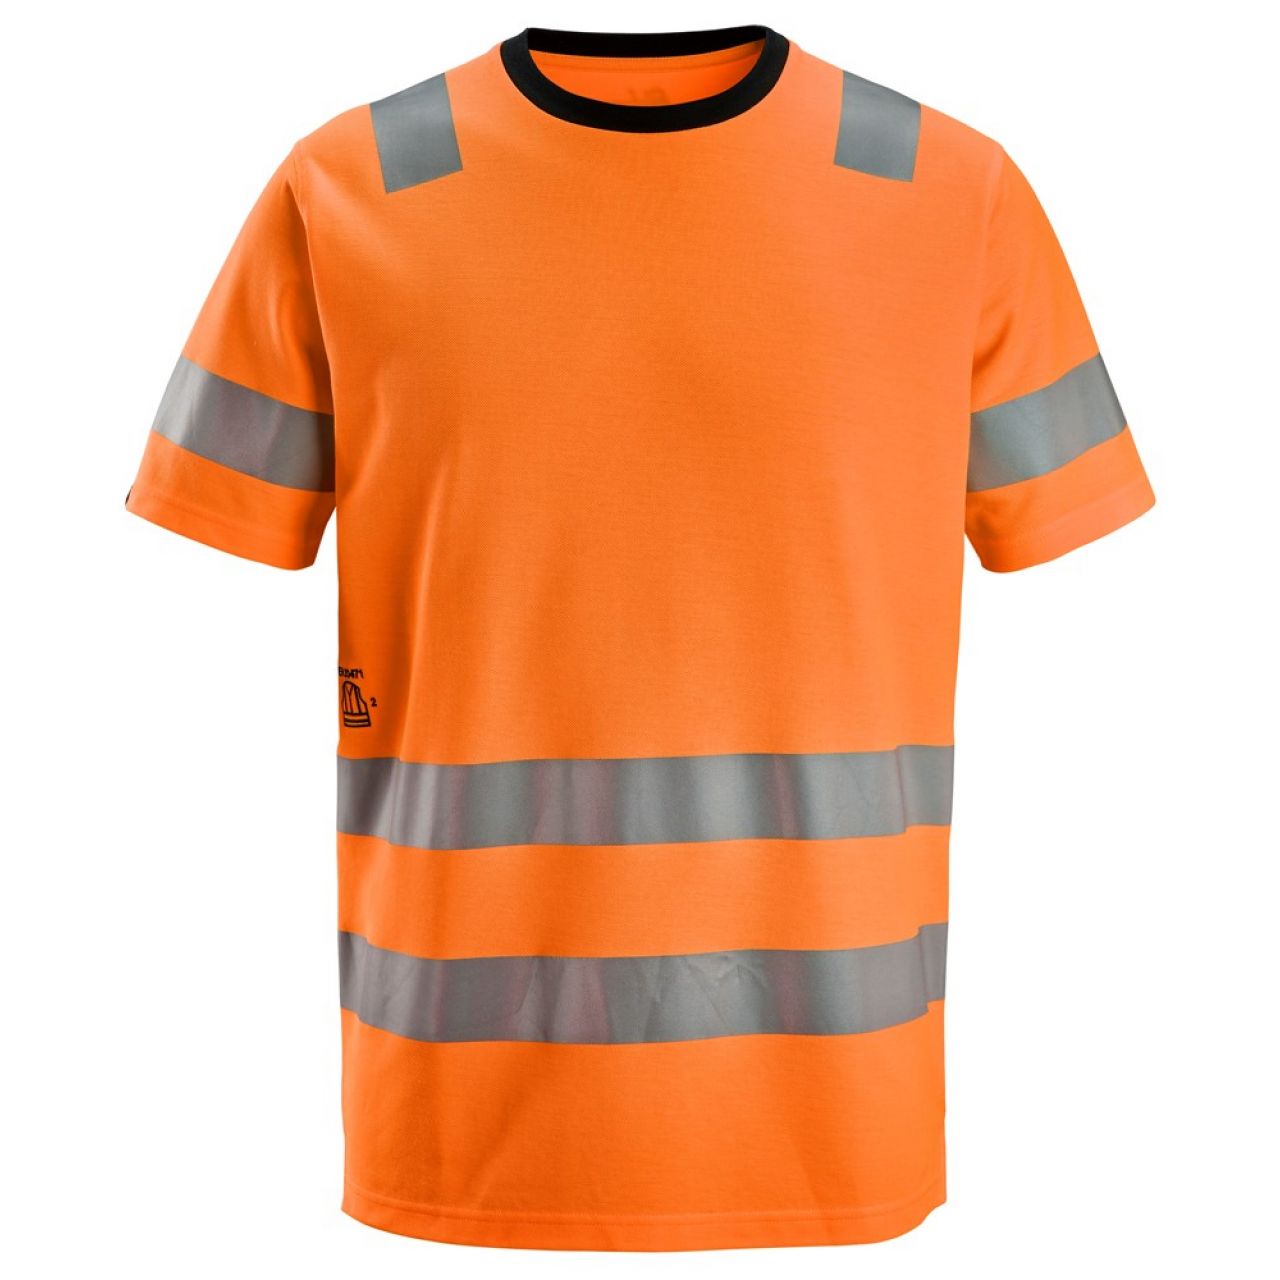 2536 Camiseta de manga corta de alta visibilidad clase 2 naranja talla 3XL